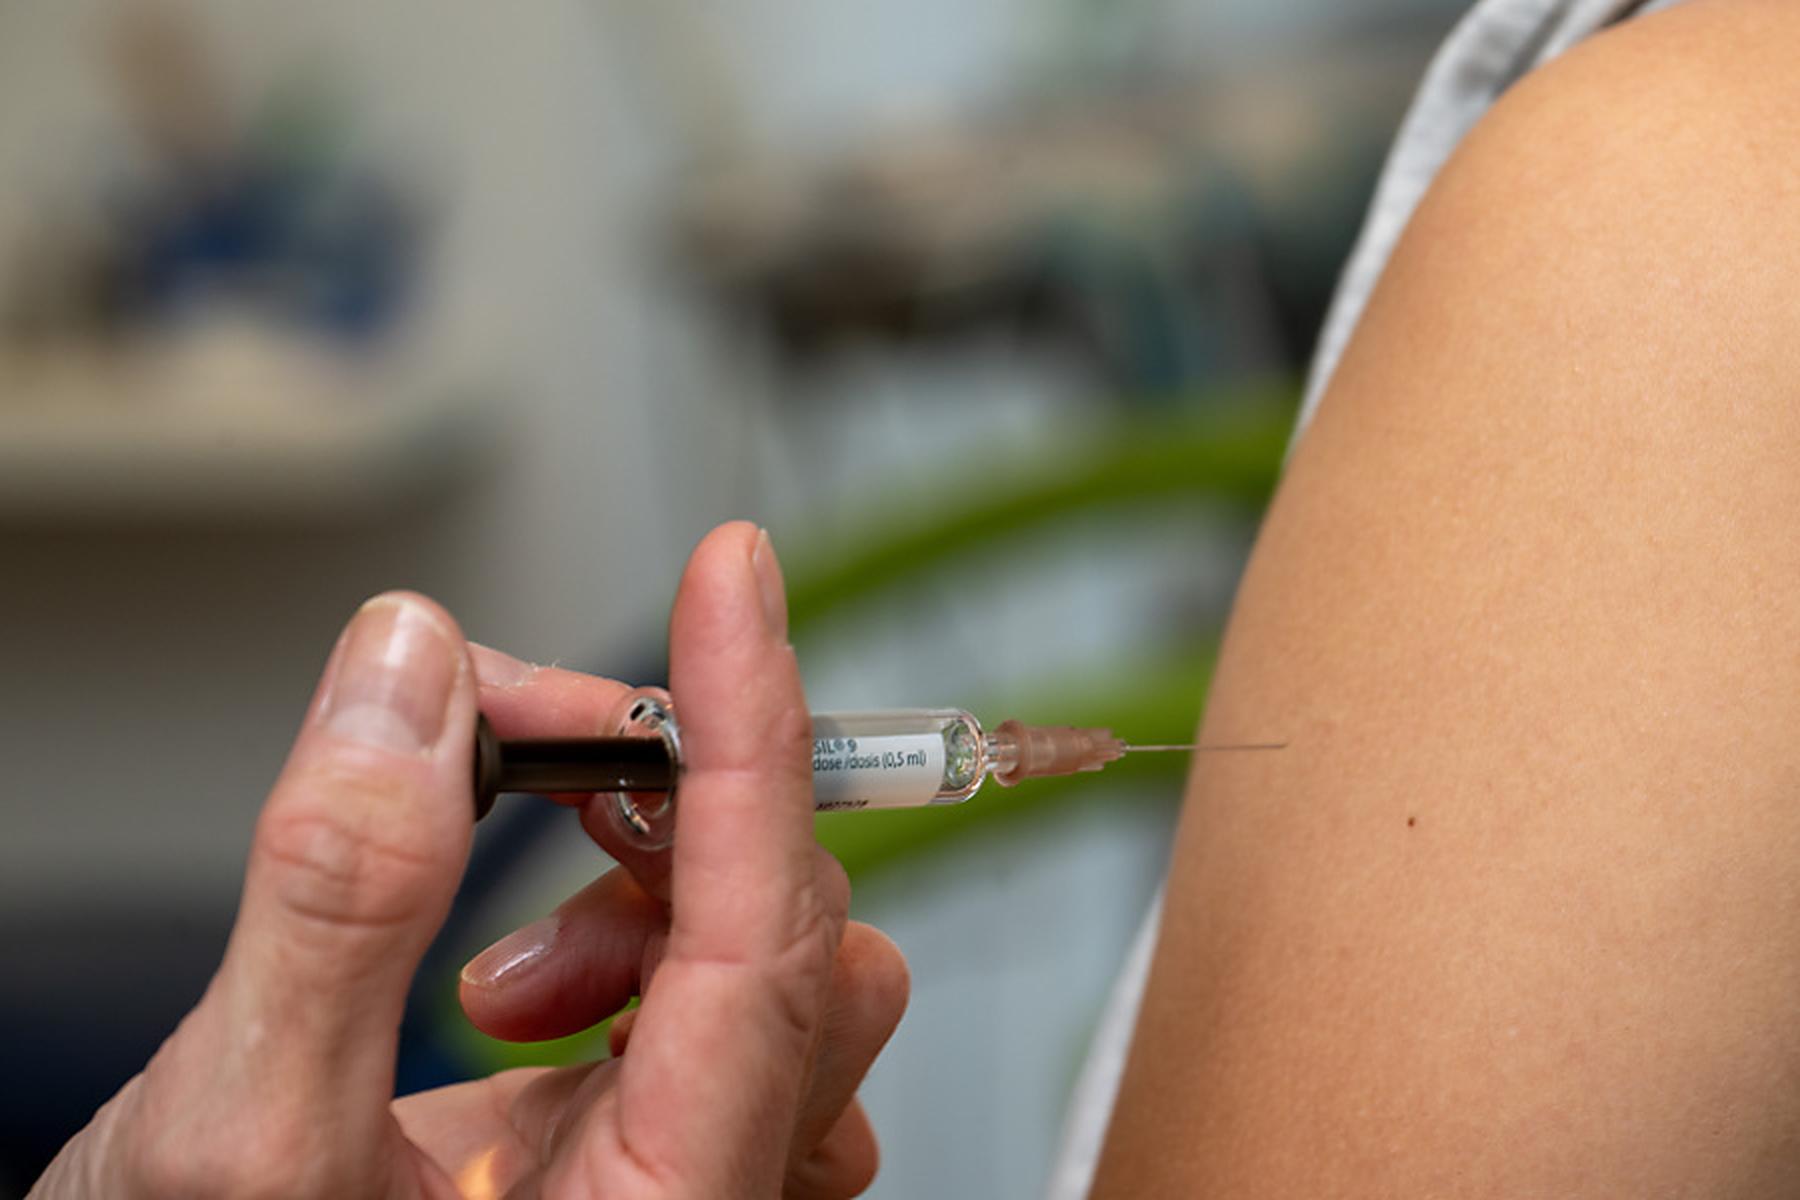 Wien: HPV-Impfung gegen Krebs nun bis zum 30. Geburtstag kostenlos